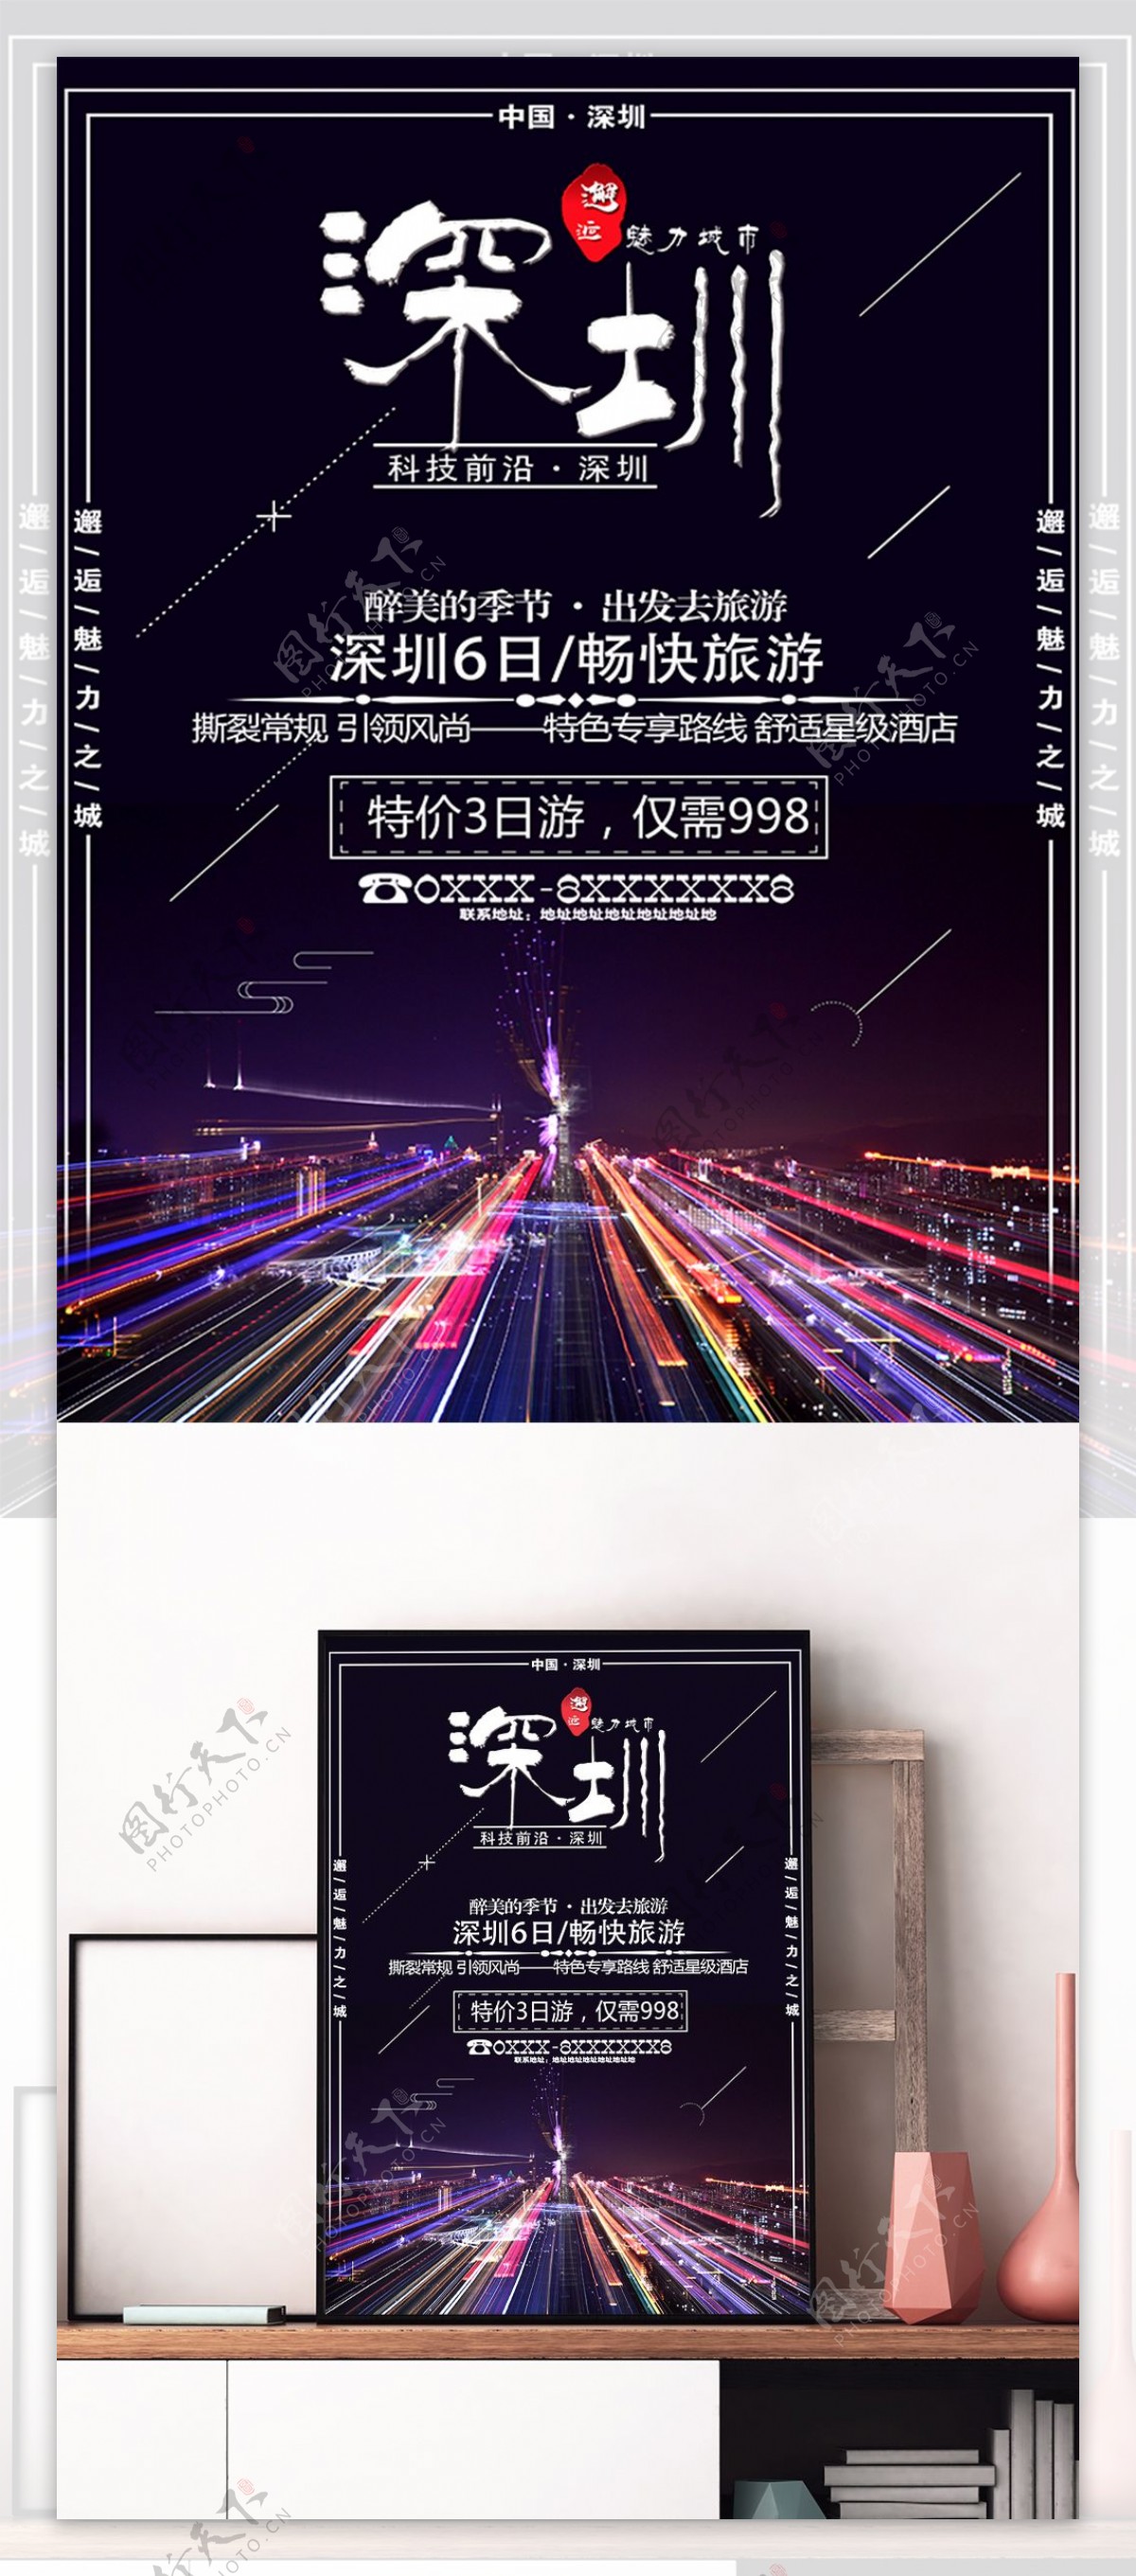 魅力深圳旅游宣传海报